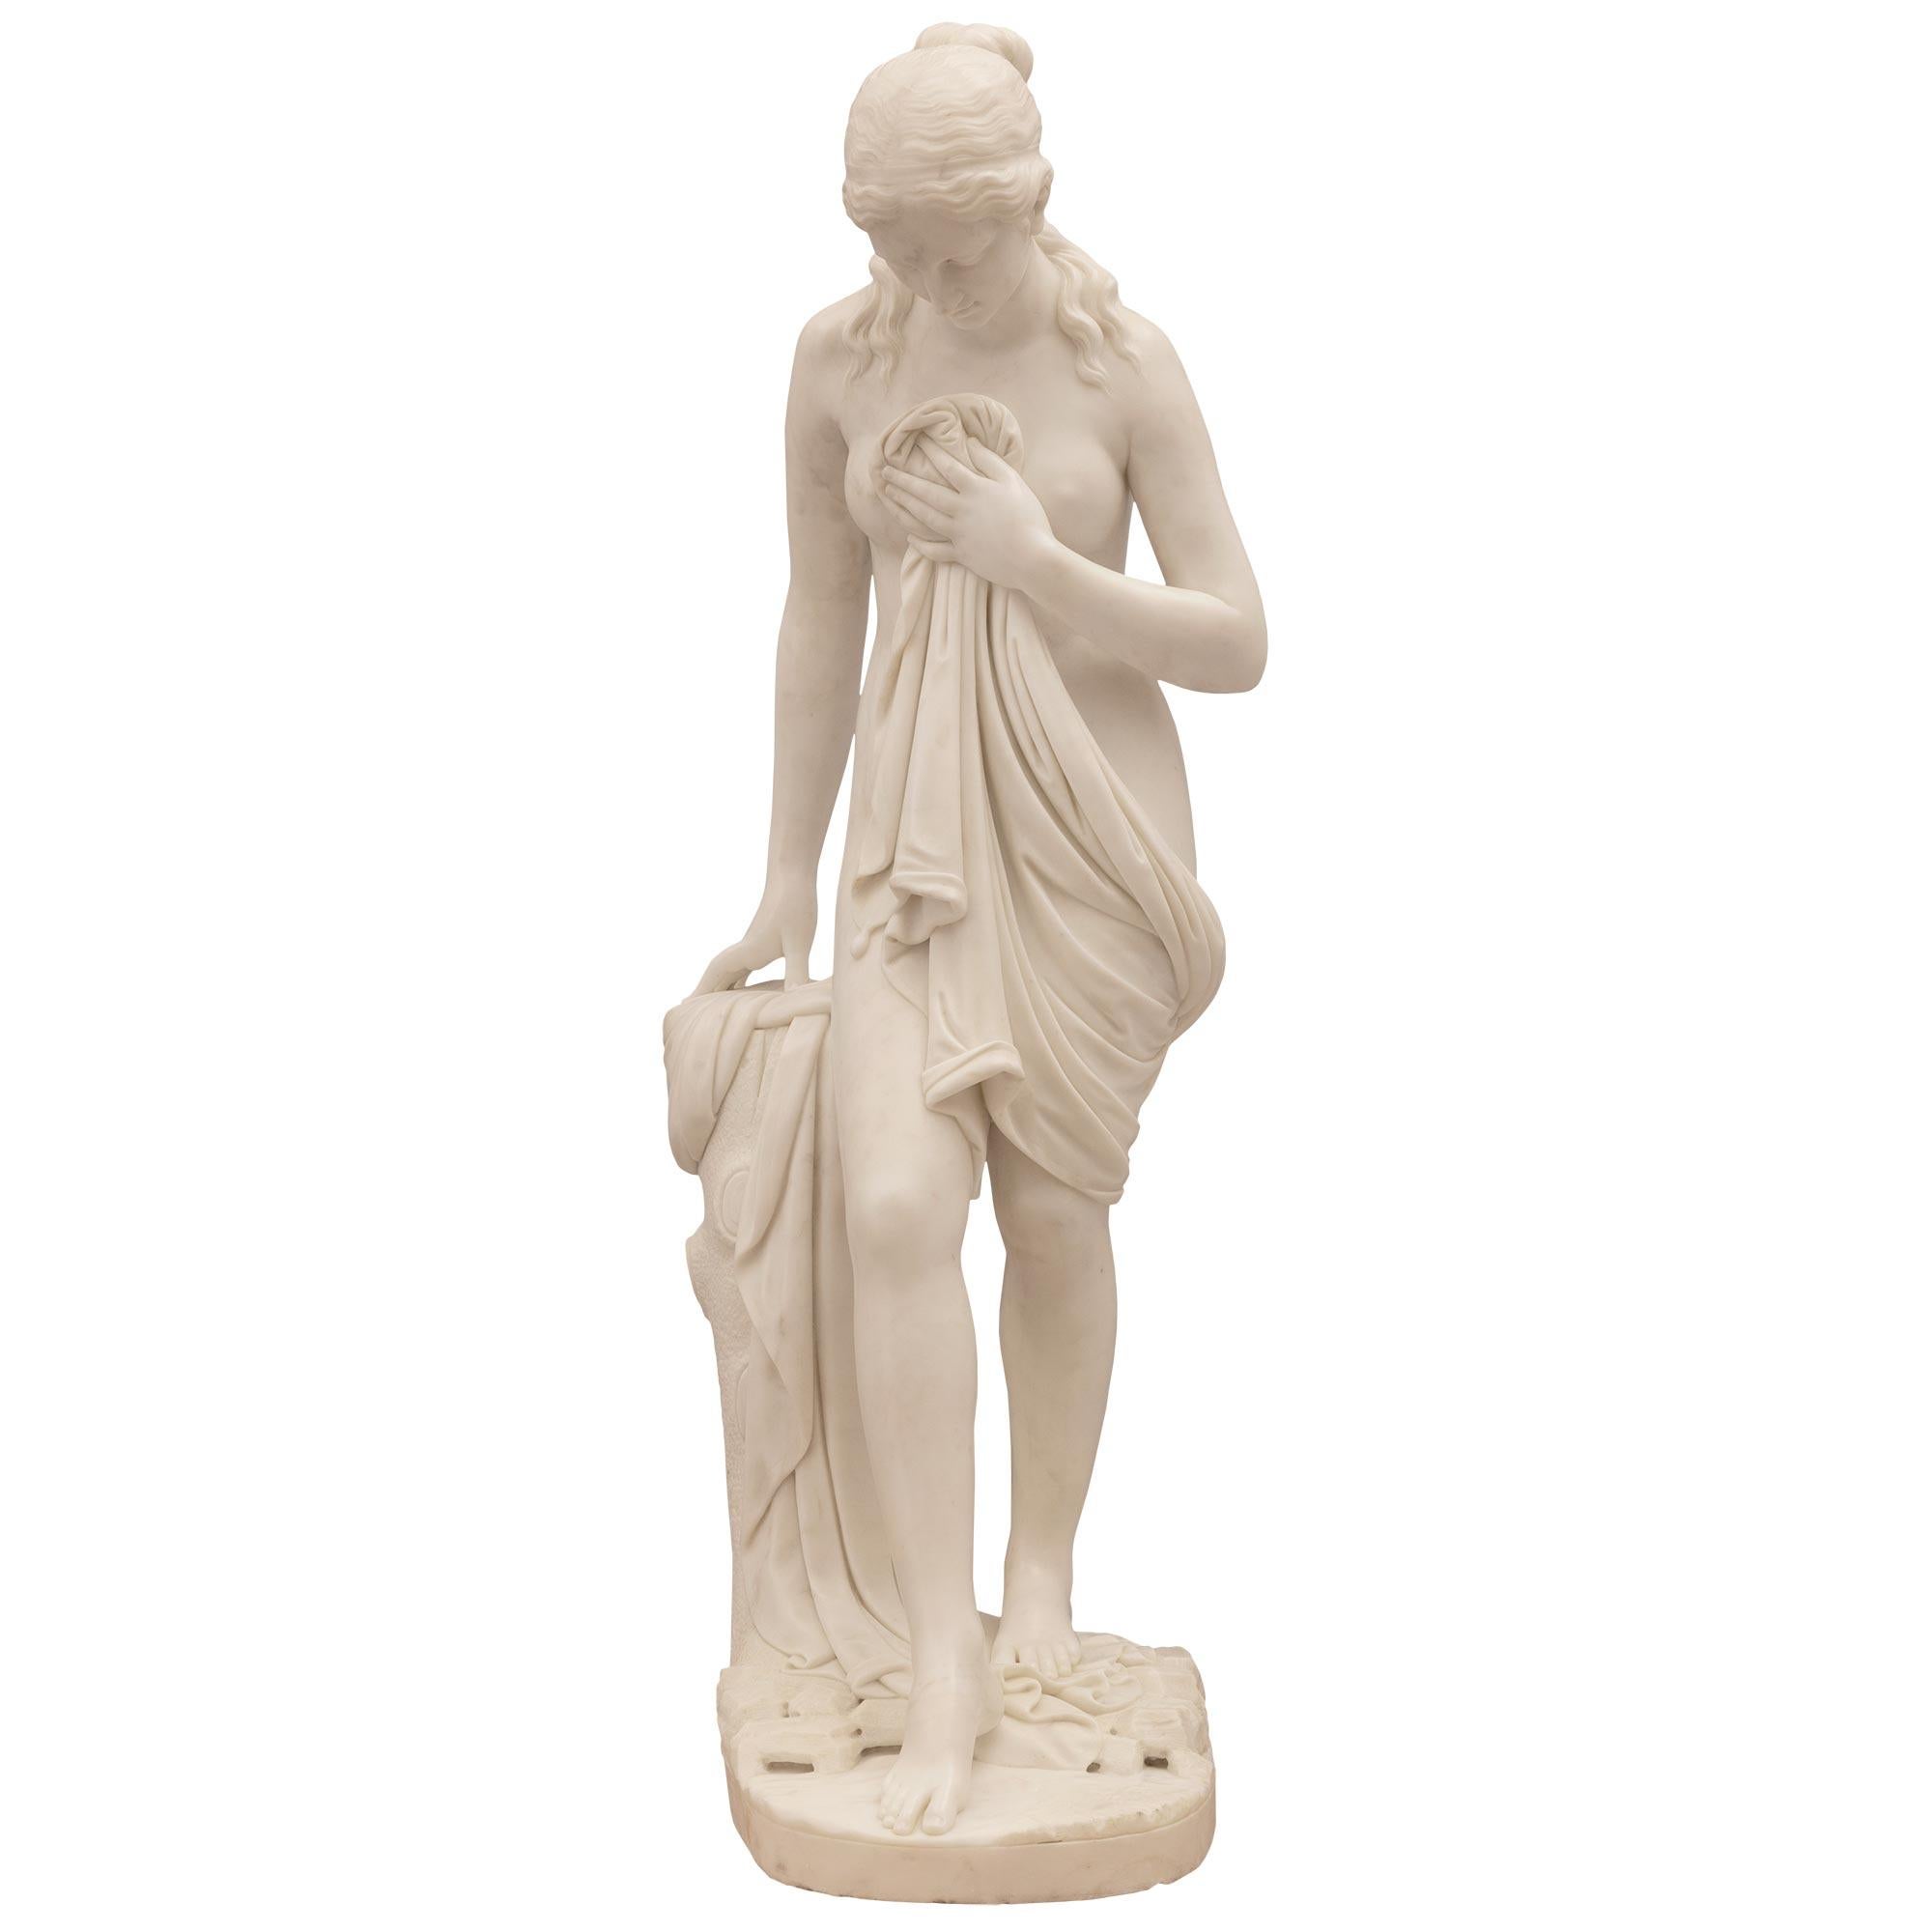 Magnifique statue en marbre blanc de Carrare du XIXe siècle, de très haute qualité, représentant une belle baigneuse. La statue est surélevée par une base conçue au sol où la jeune fille richement sculptée se tient à côté d'un tronc d'arbre. Elle